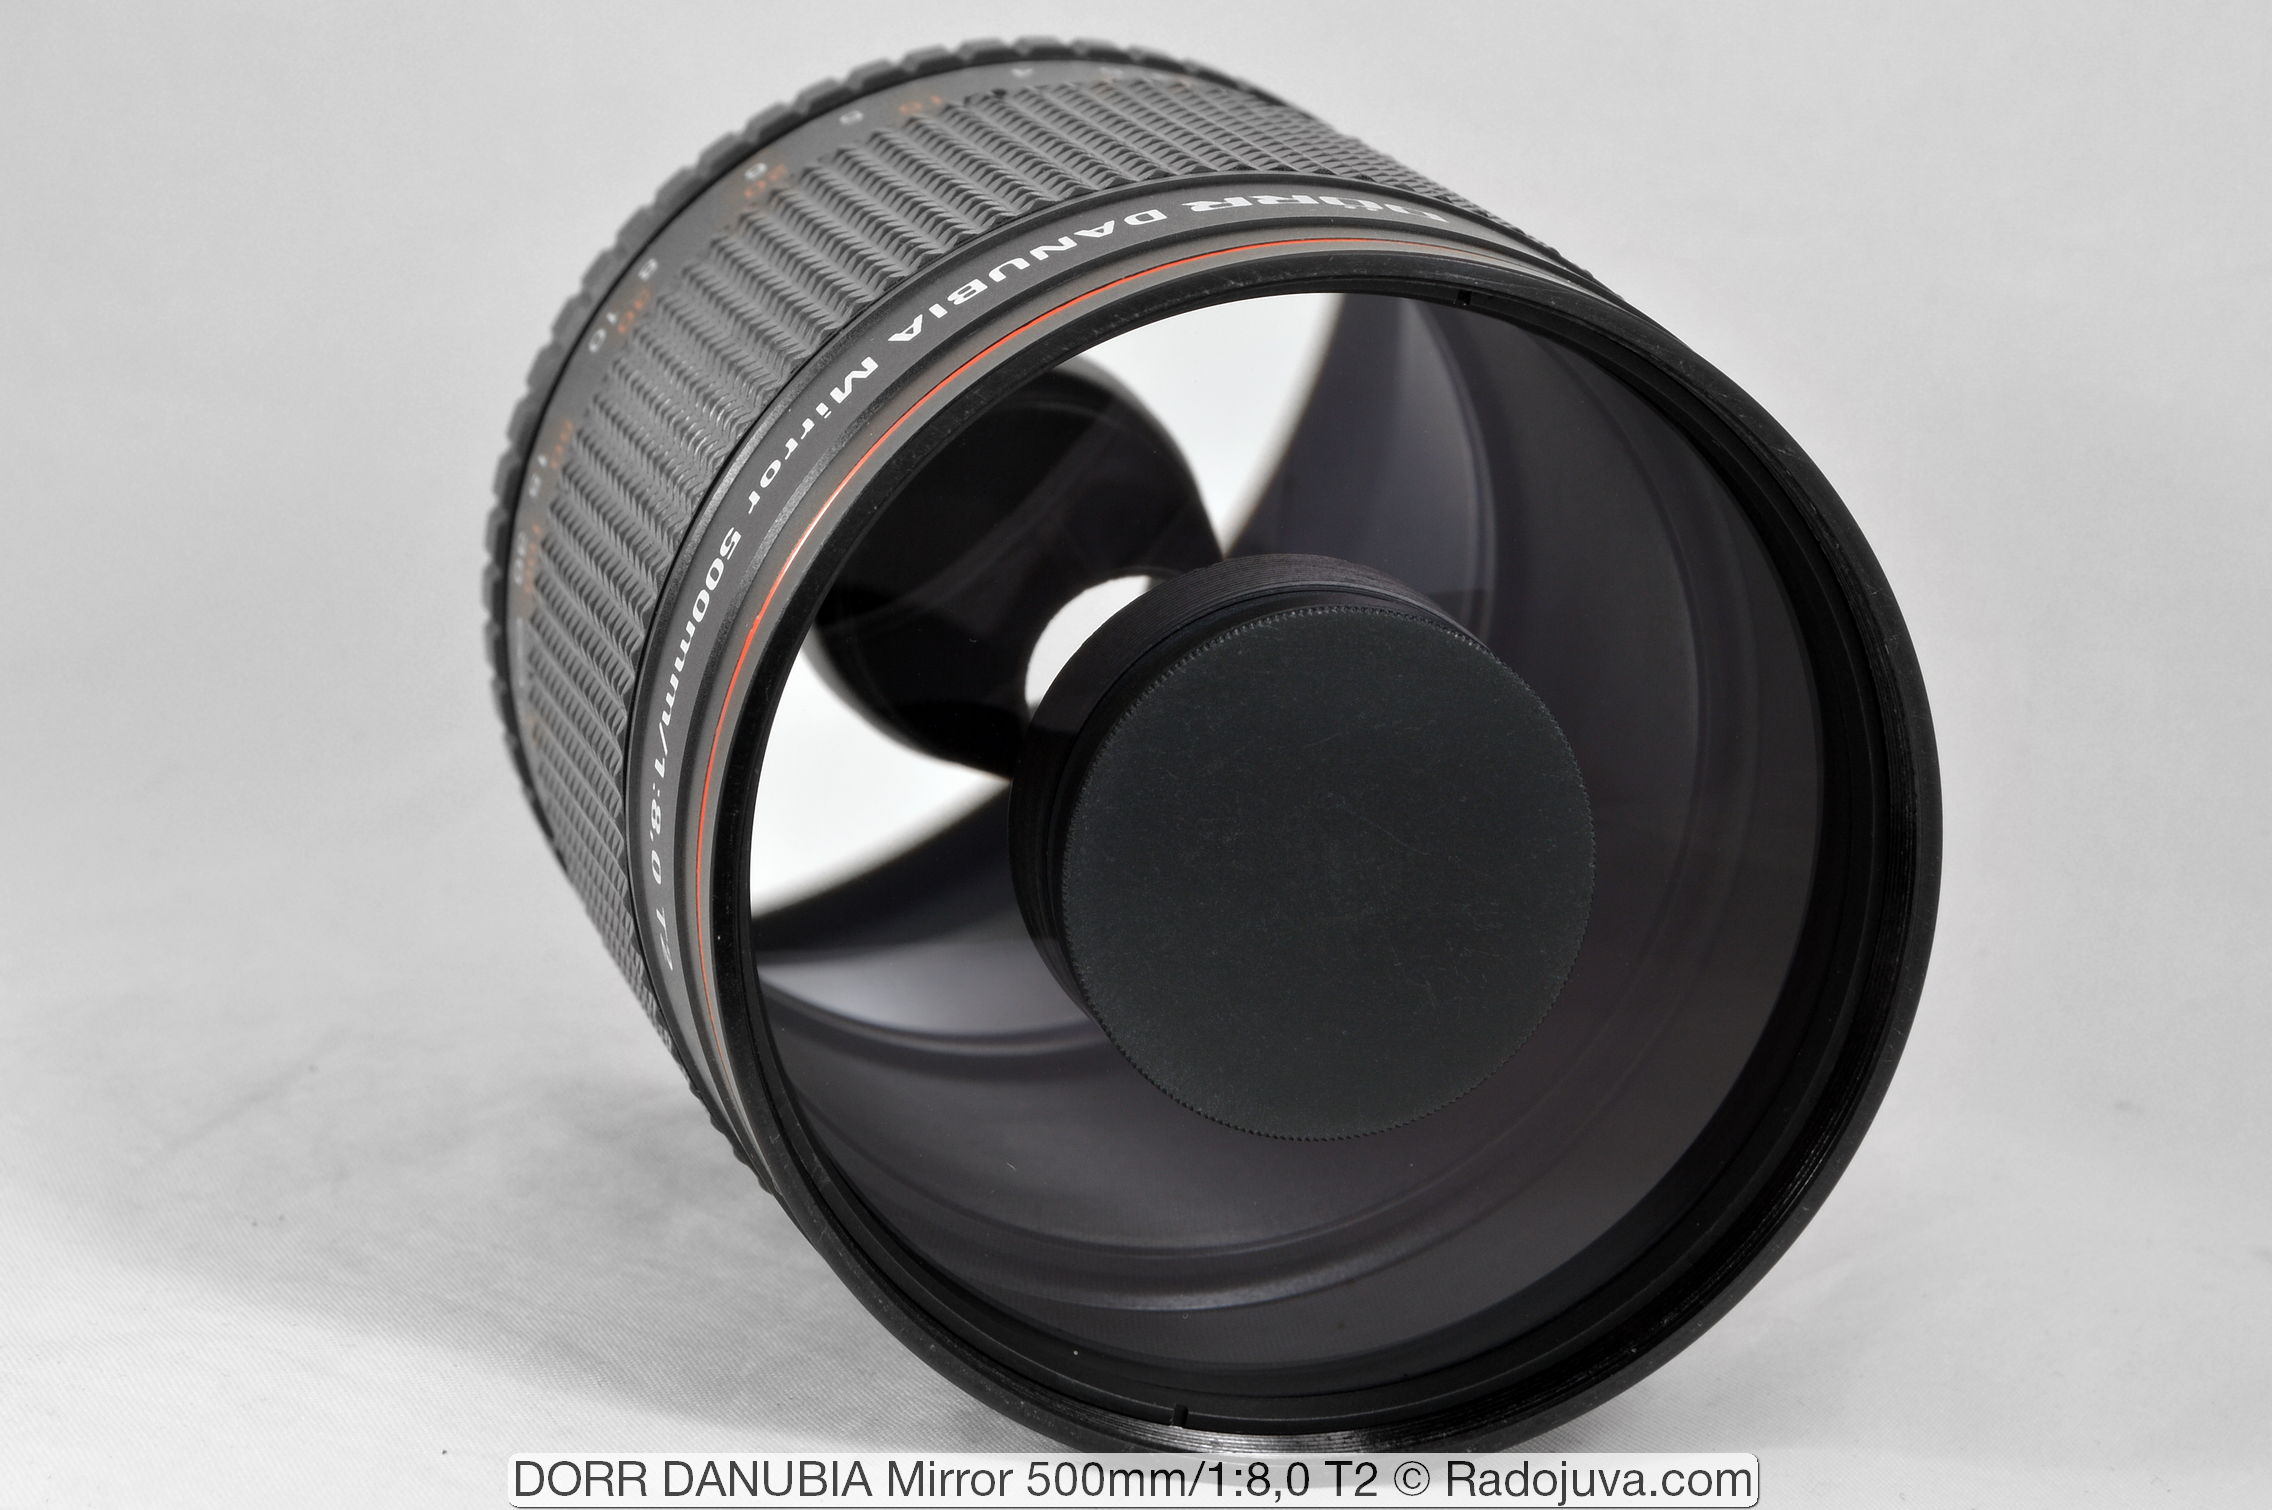 DORR DANUBIA Mirror 500mm F/8 T2